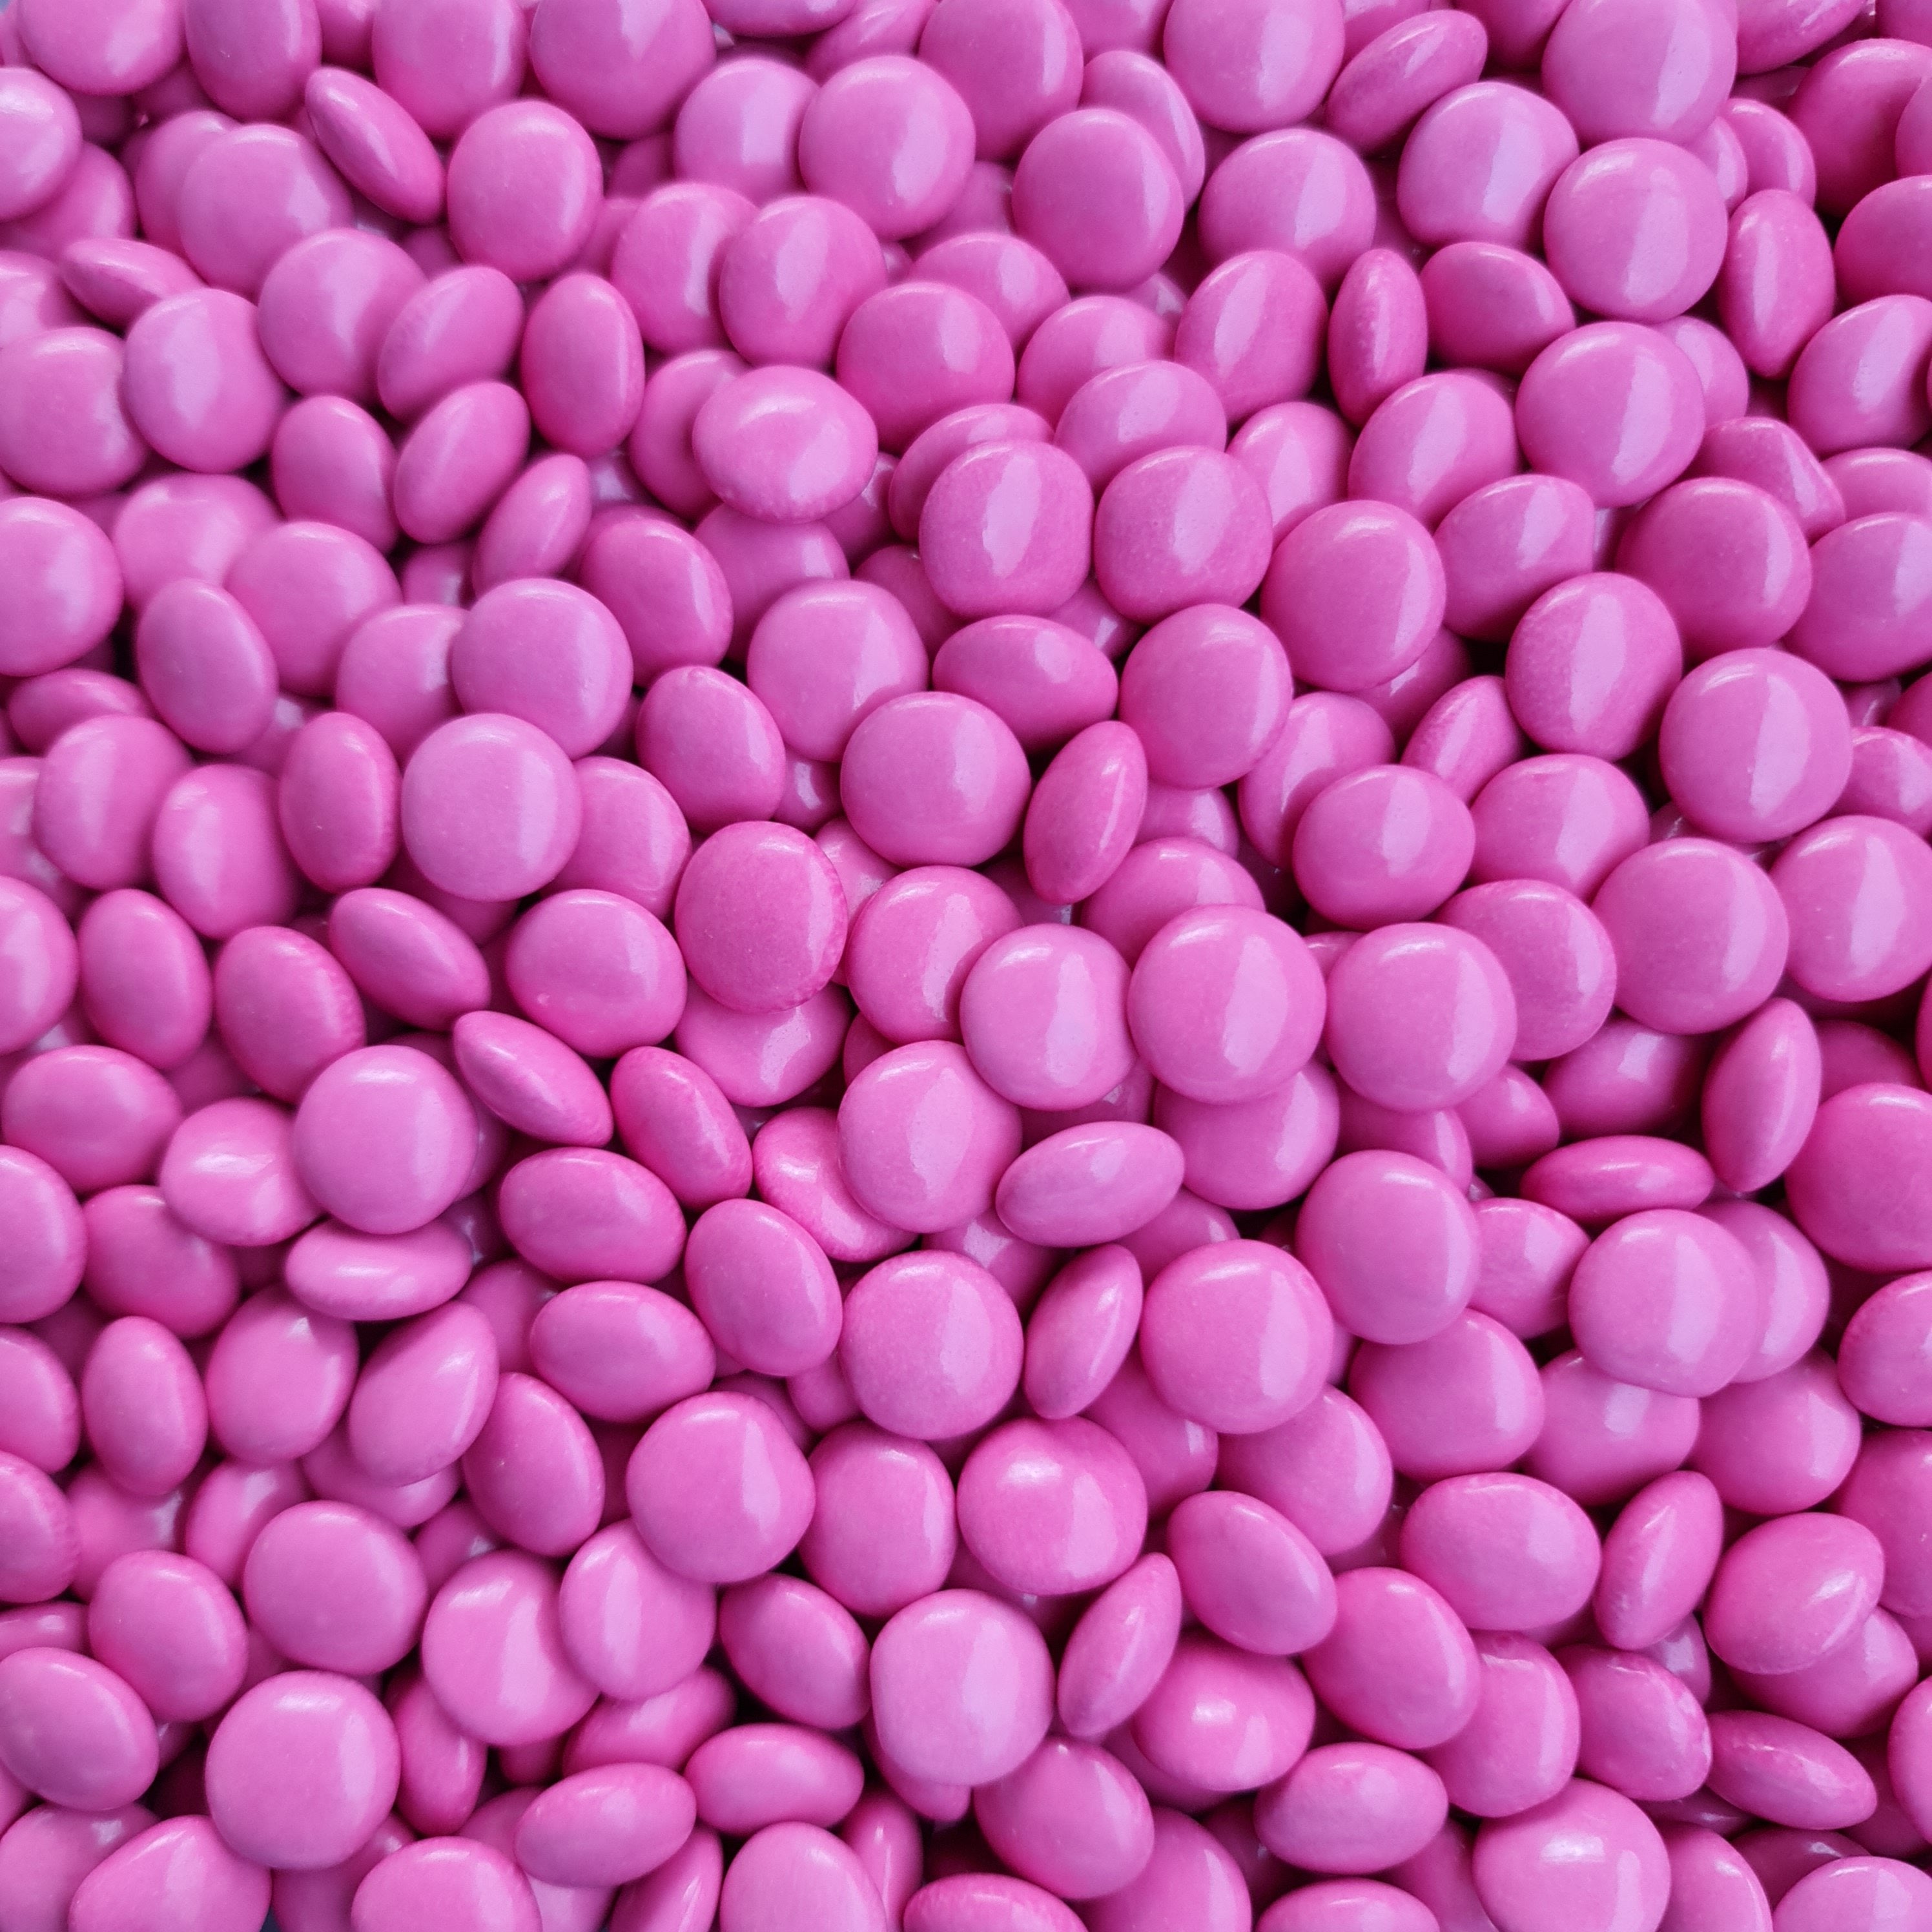 Pink Choc Buttons - Pik n Mix Lollies NZ